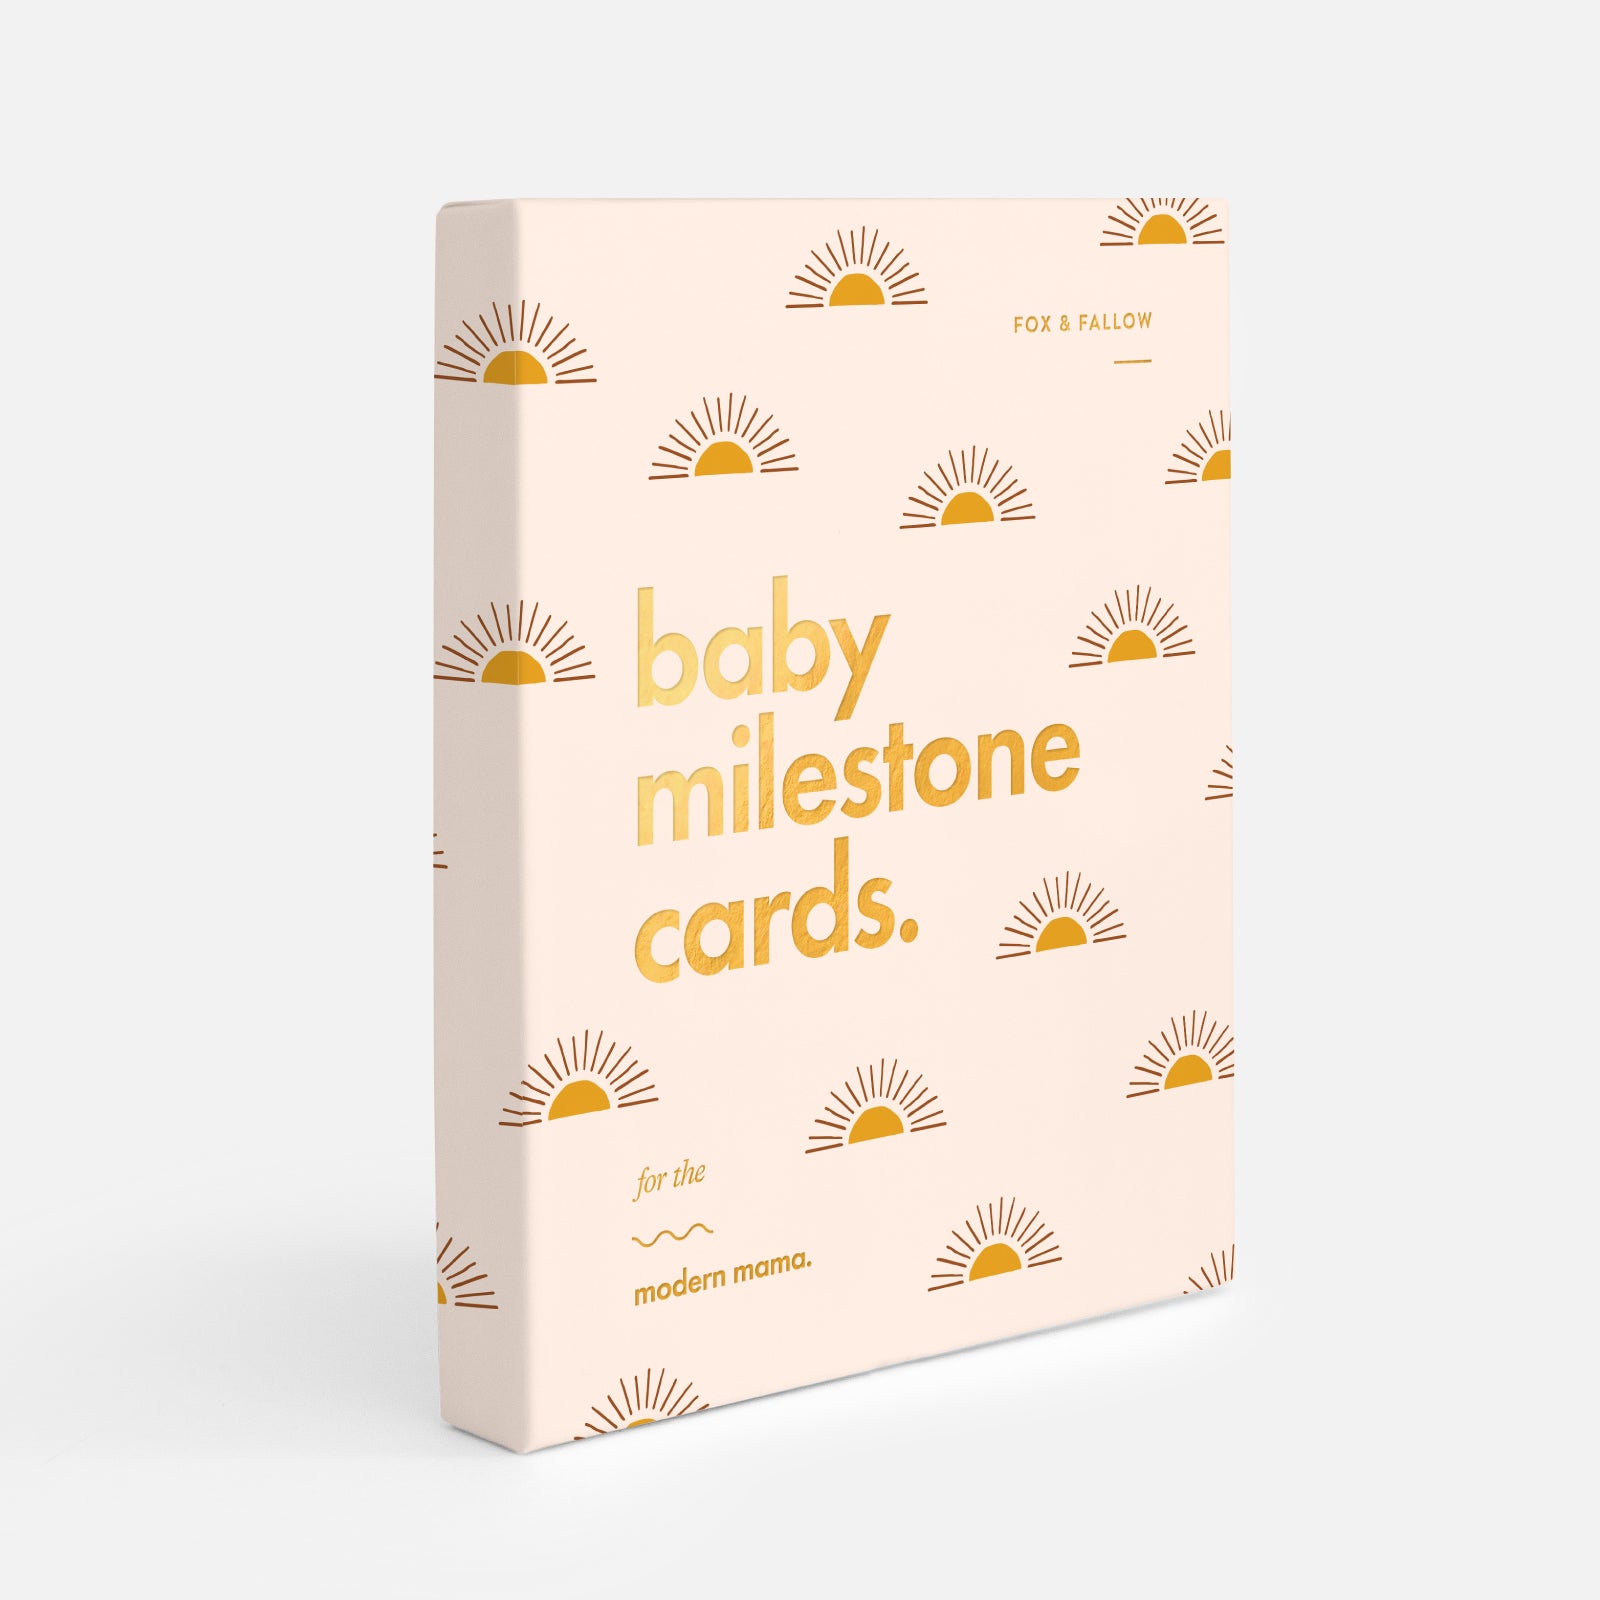 Boho Baby Milestone Card Set